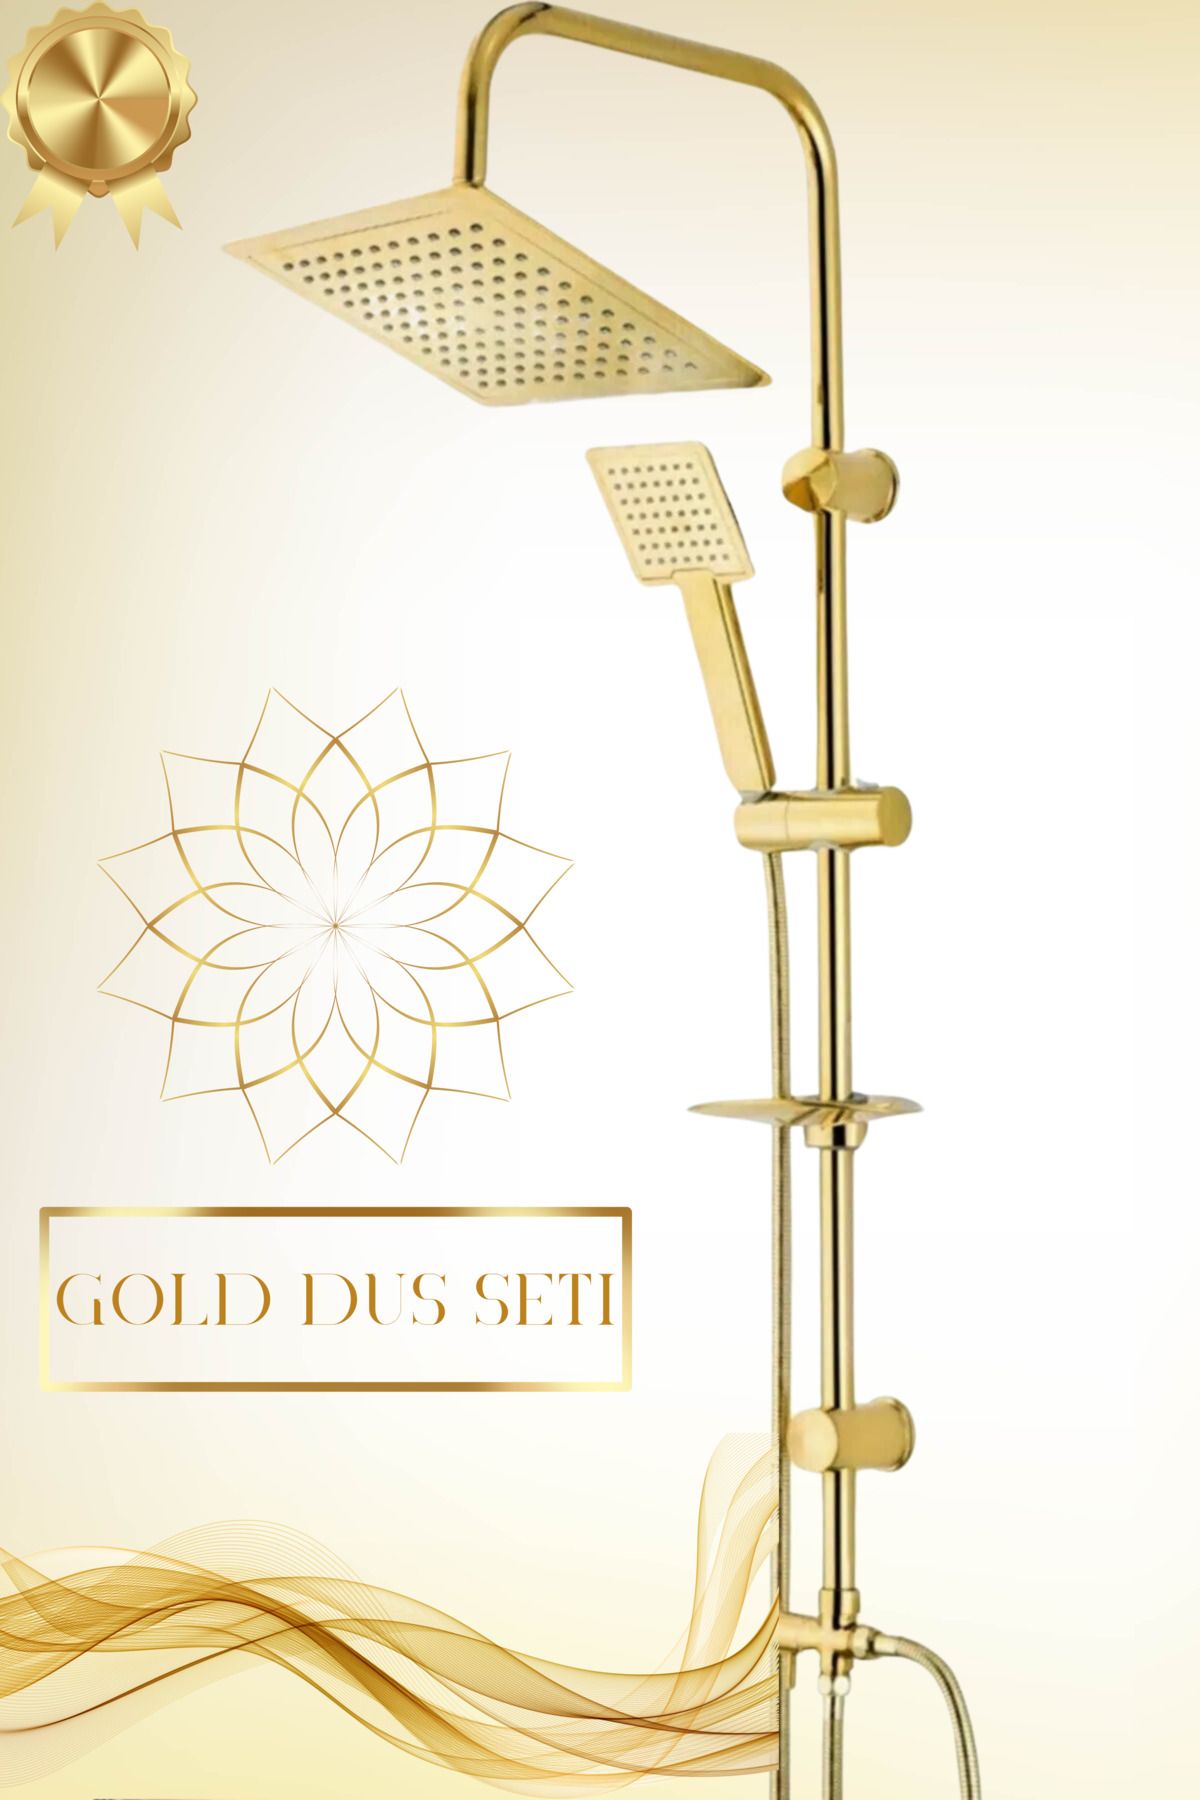 Irmak Gold Altın Kare Tepe Duş Başlığı Seti Yeni Nesil Yağmurlama Çok Fonksiyonlu Kaliteli Duş Sistemi Set